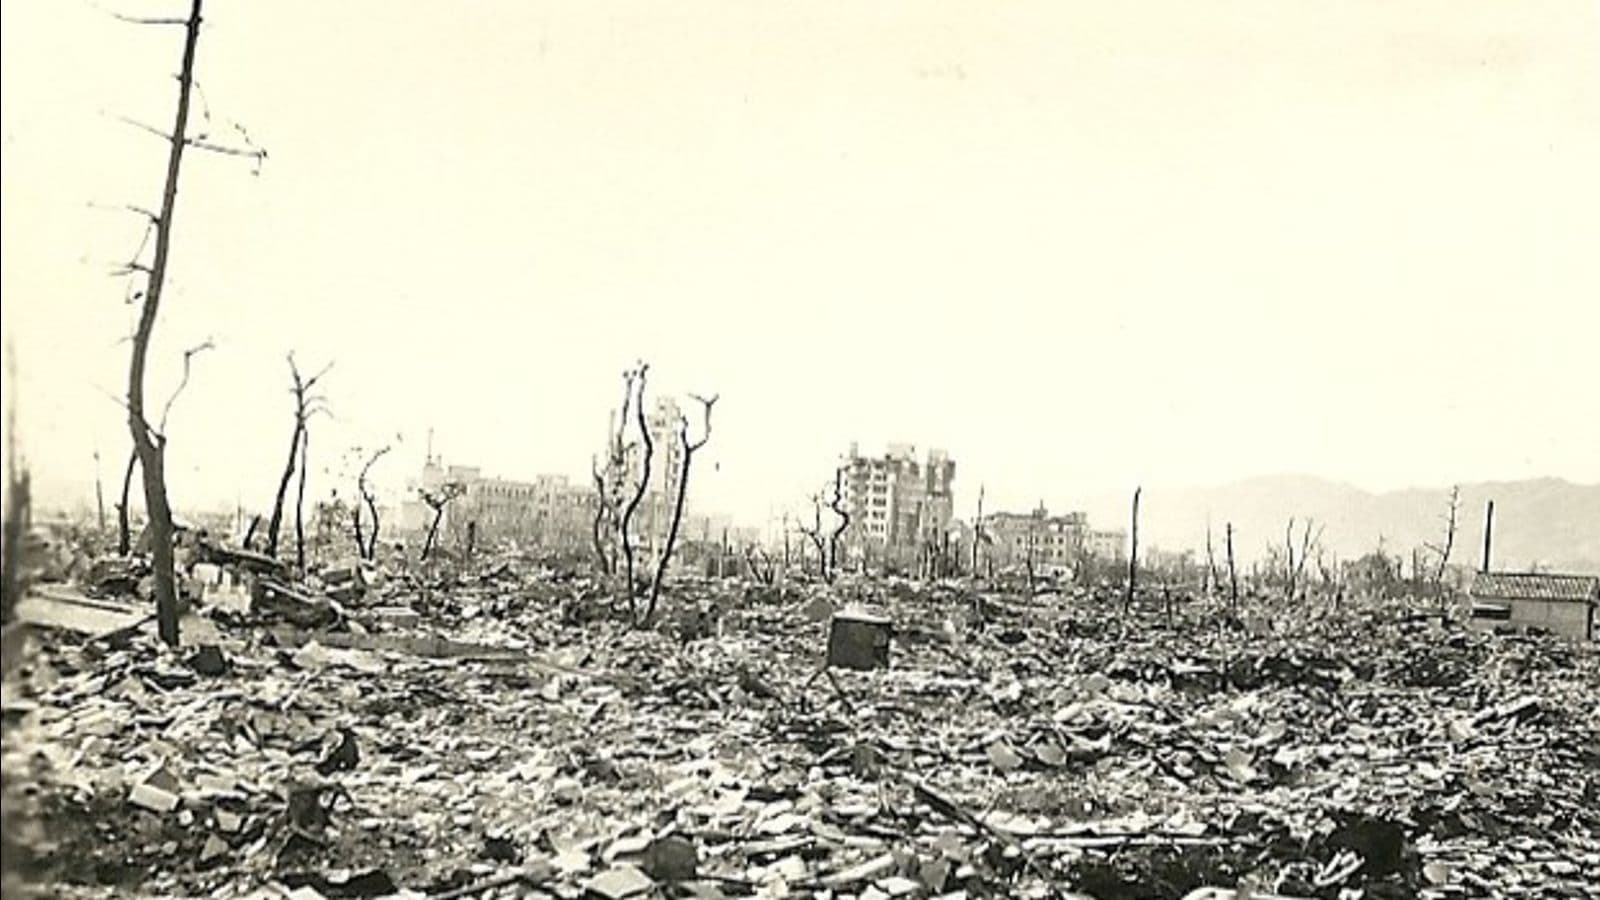 Hiroshima, Japan November 1945.